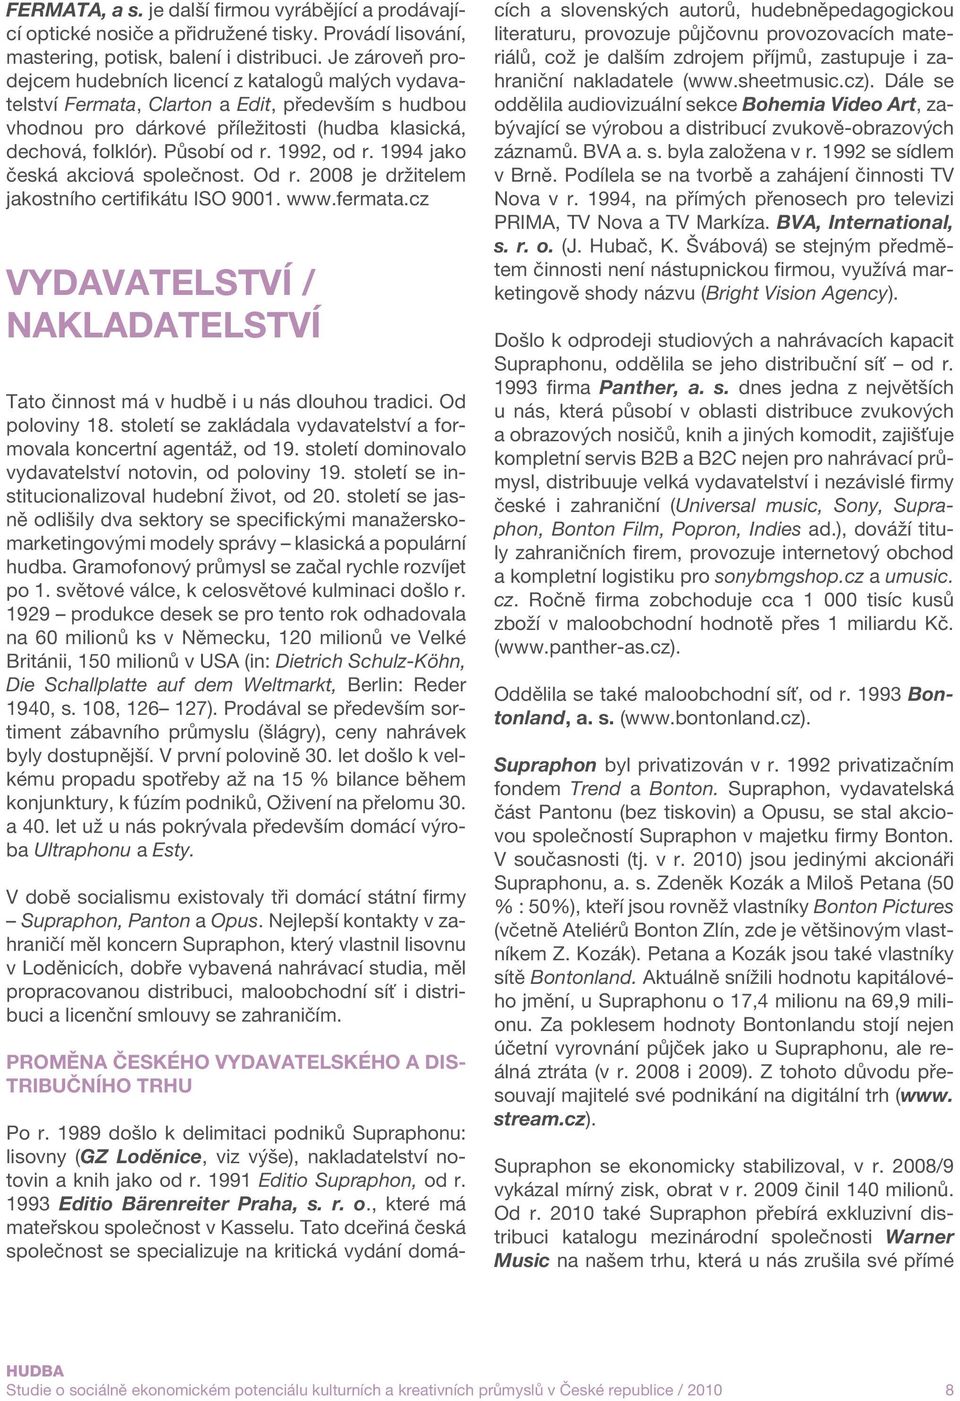 1992, od r. 1994 jako česká akciová společnost. Od r. 2008 je držitelem jakostního certifikátu ISO 9001. www.fermata.cz Vydavatelství / Nakladatelství Tato činnost má v hudbě i u nás dlouhou tradici.